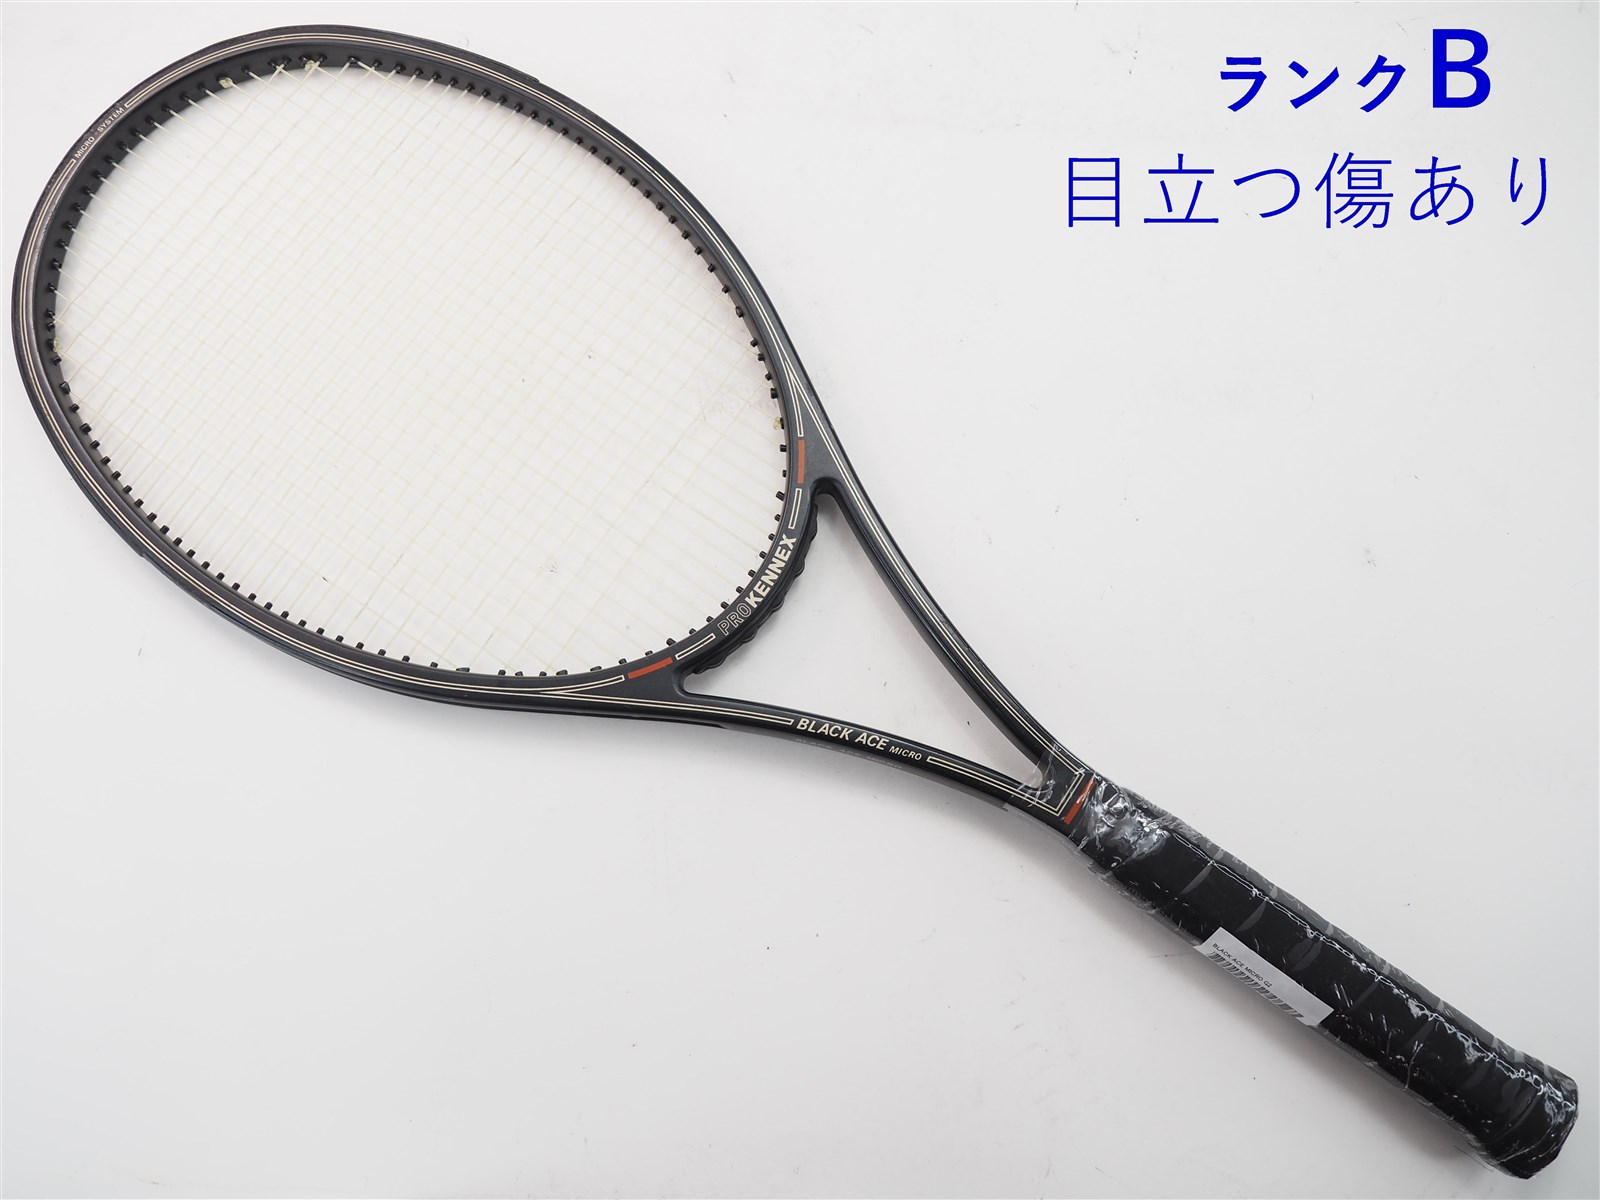 【中古】プロケネックス ブラック エース マイクロPROKENNEX BLACK ACE MICRO(G2相当)【中古 テニスラケット】【送料無料】